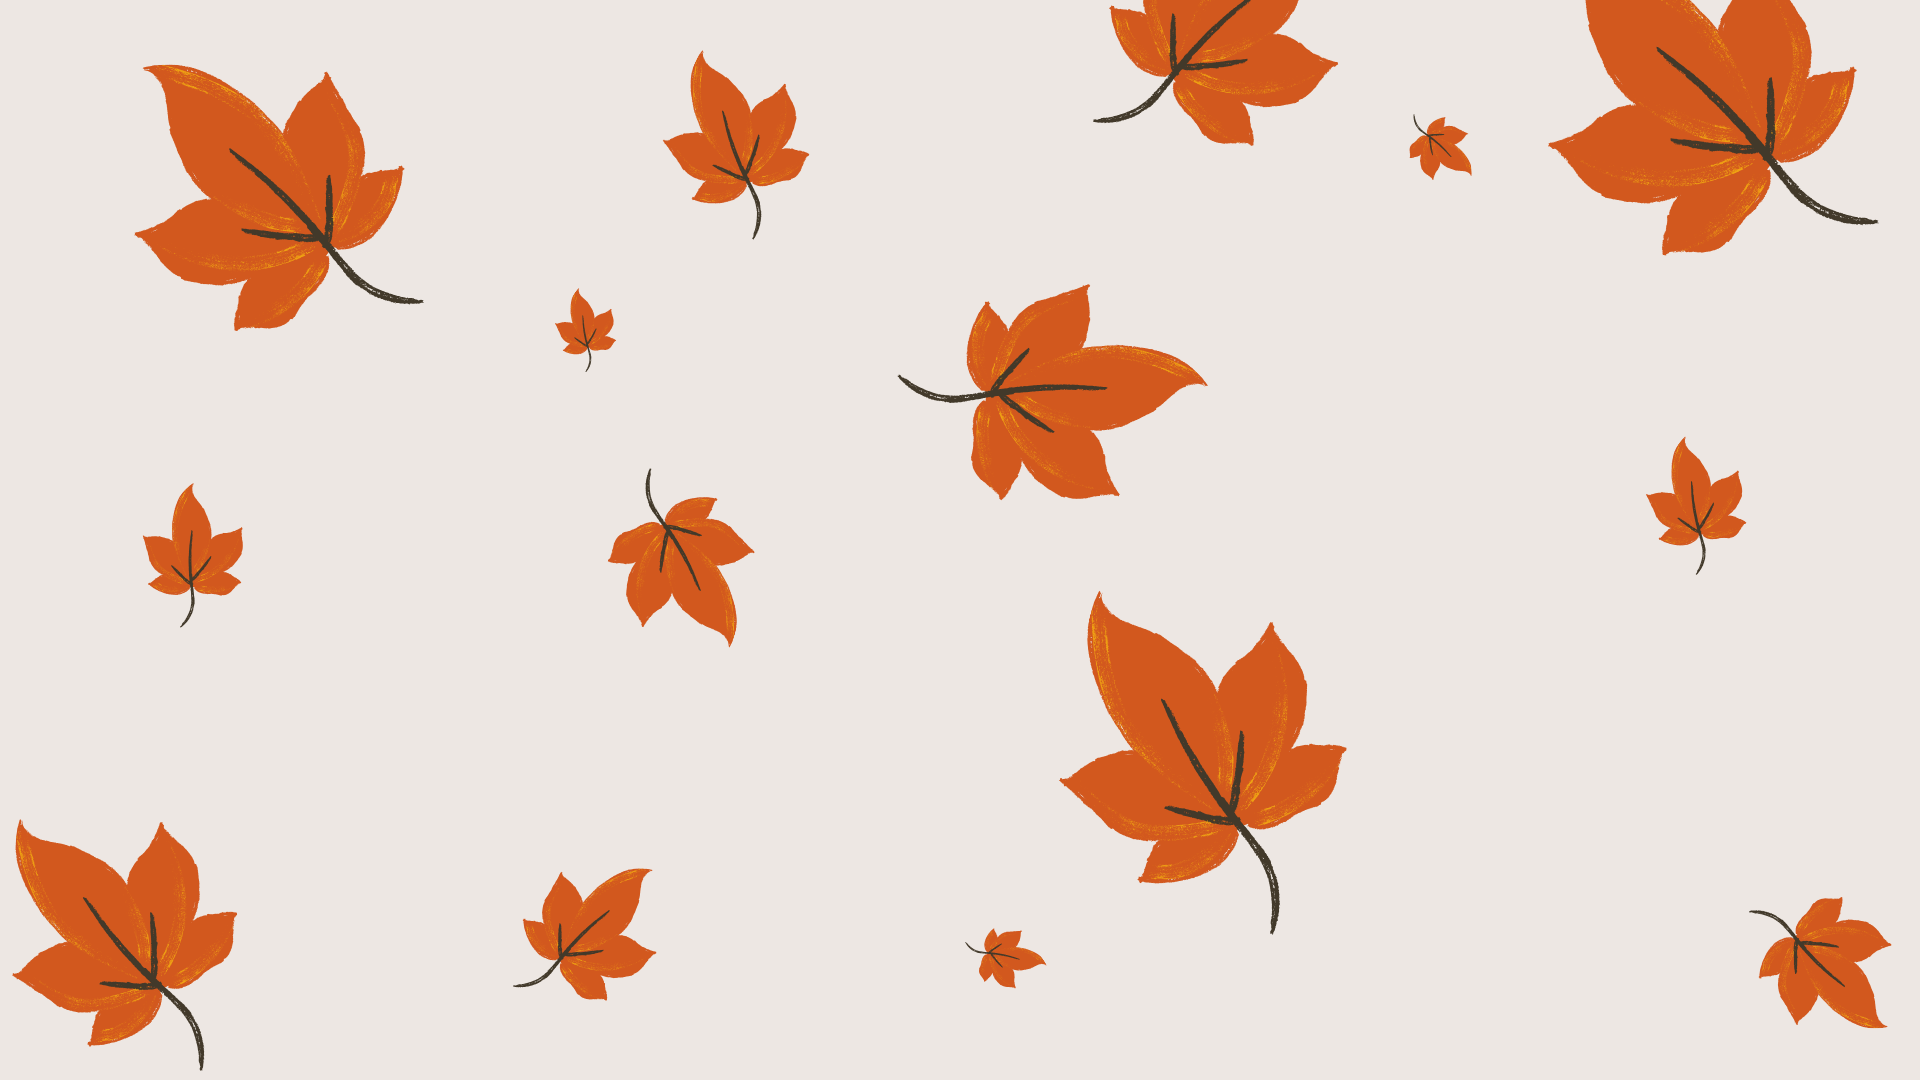 Autumn Wallpapers Free HD Download 500 HQ  Unsplash